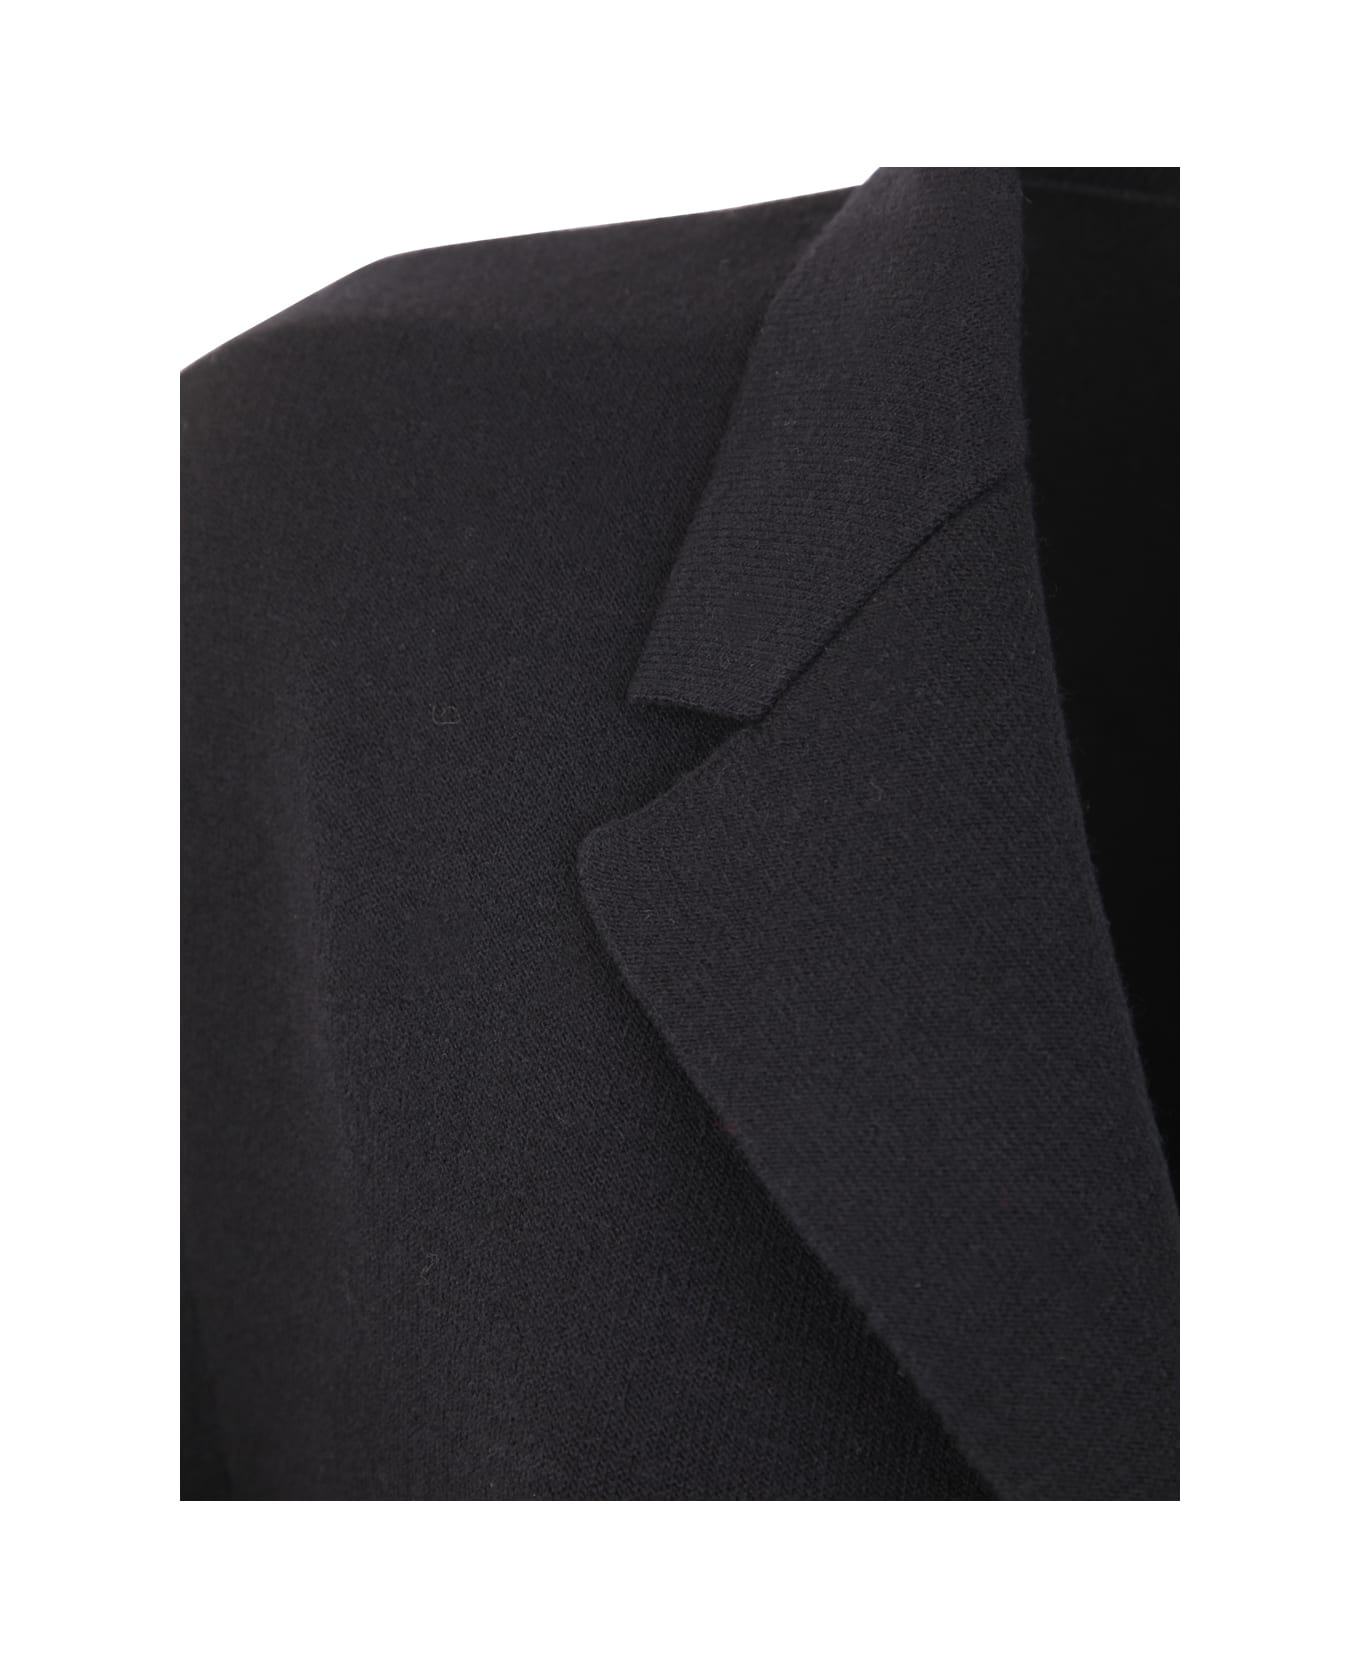 Boboutic Classic Coat - Black コート